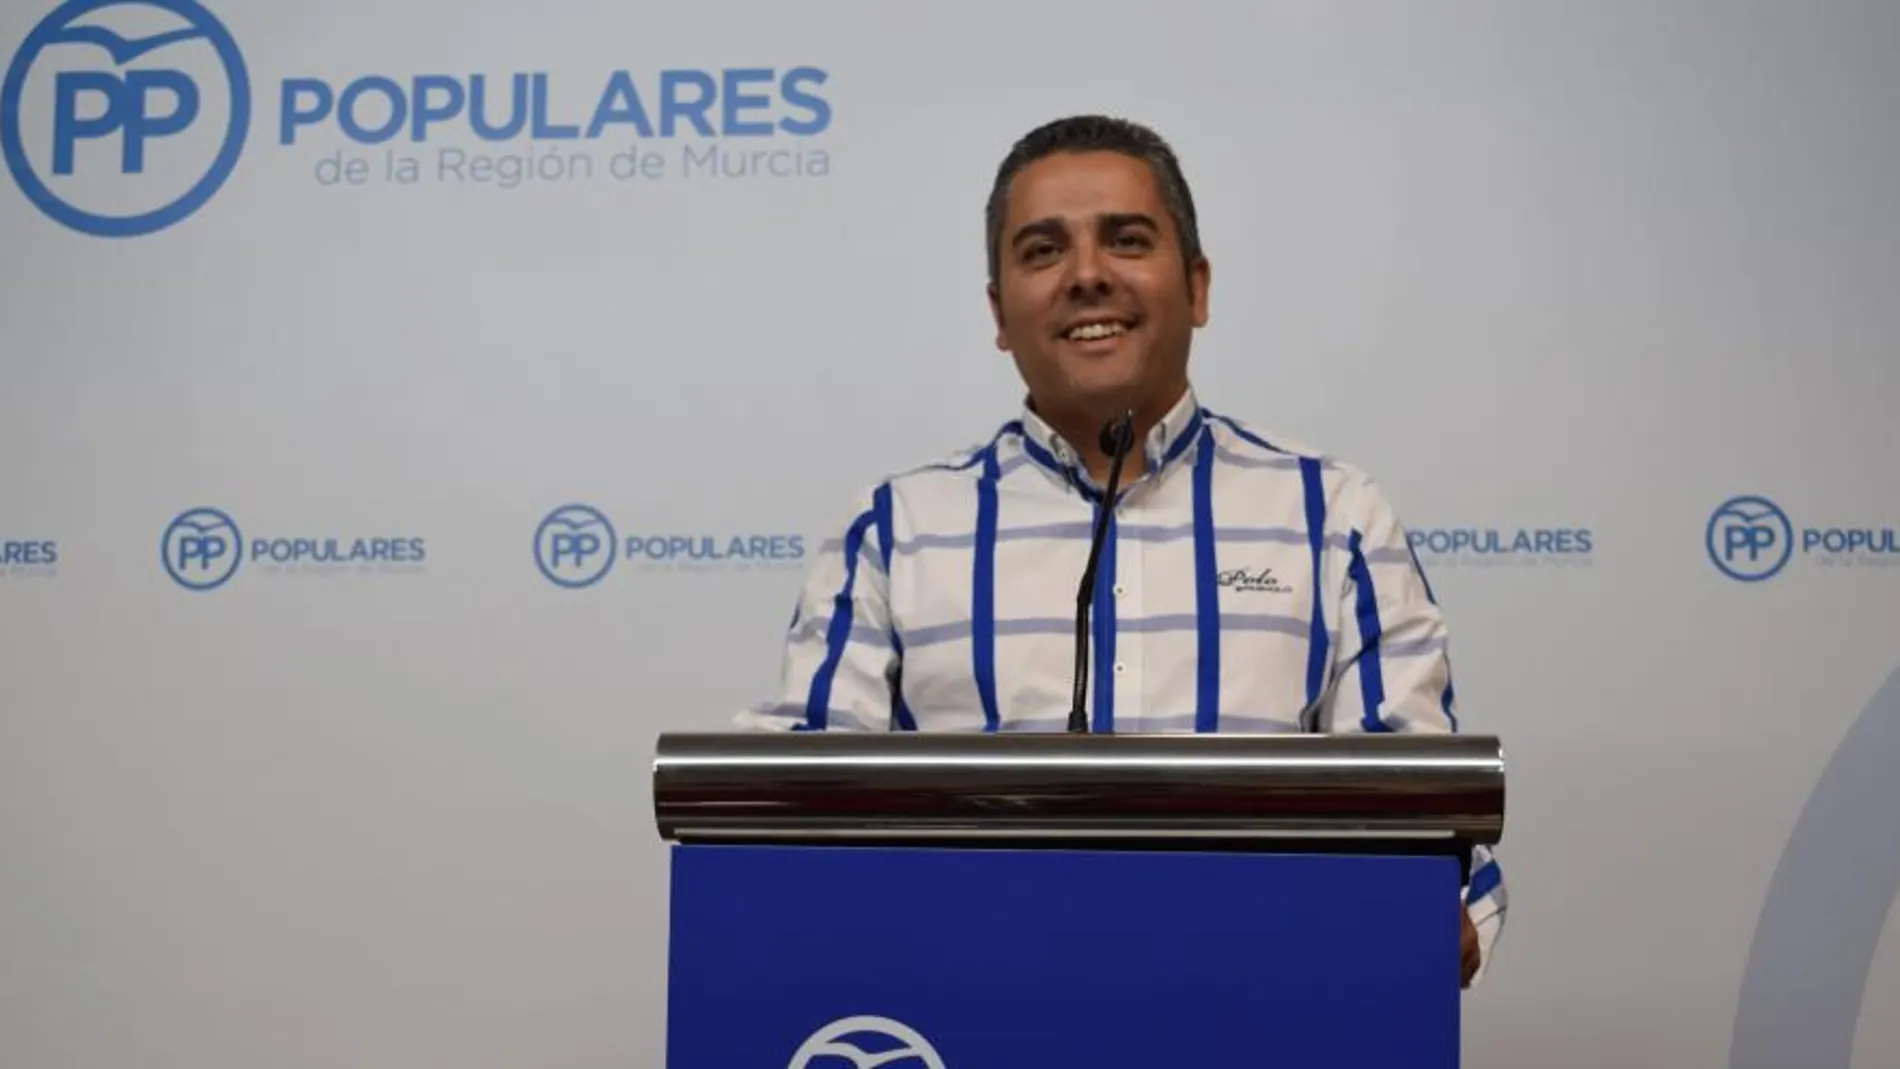 El diputado del PP, Jesús Cano, ha presentado la moción en la Asamblea Regional para fomentar la singularidad de la gastronomía local